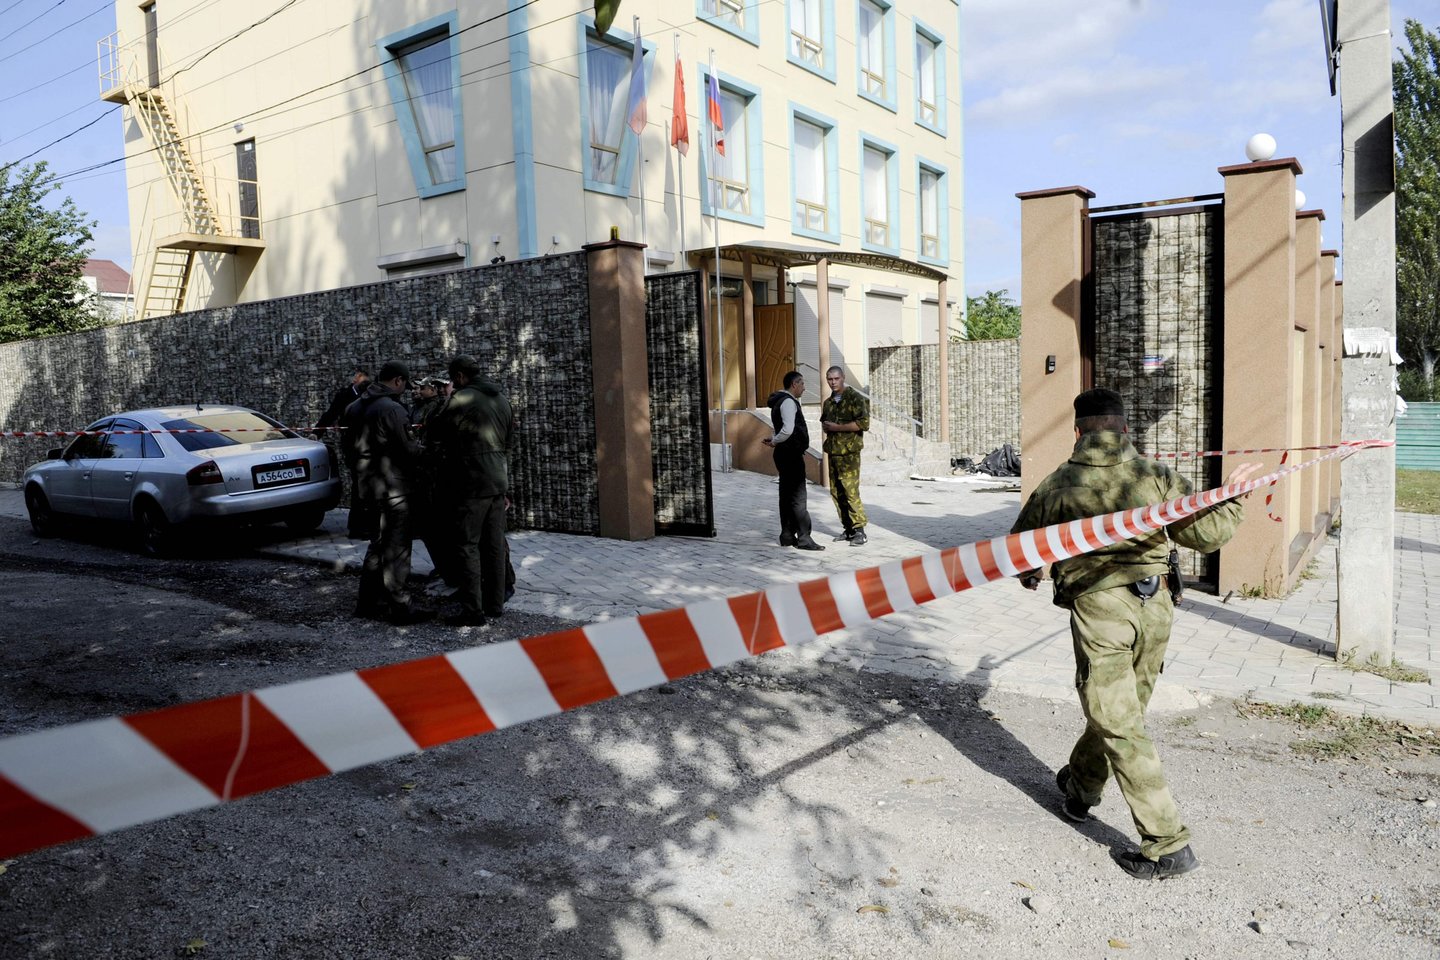  Donecke buvo susprogdinta bomba per Komunistų partijos suvažiavimą. <br> AFP/Scanpix nuotr.